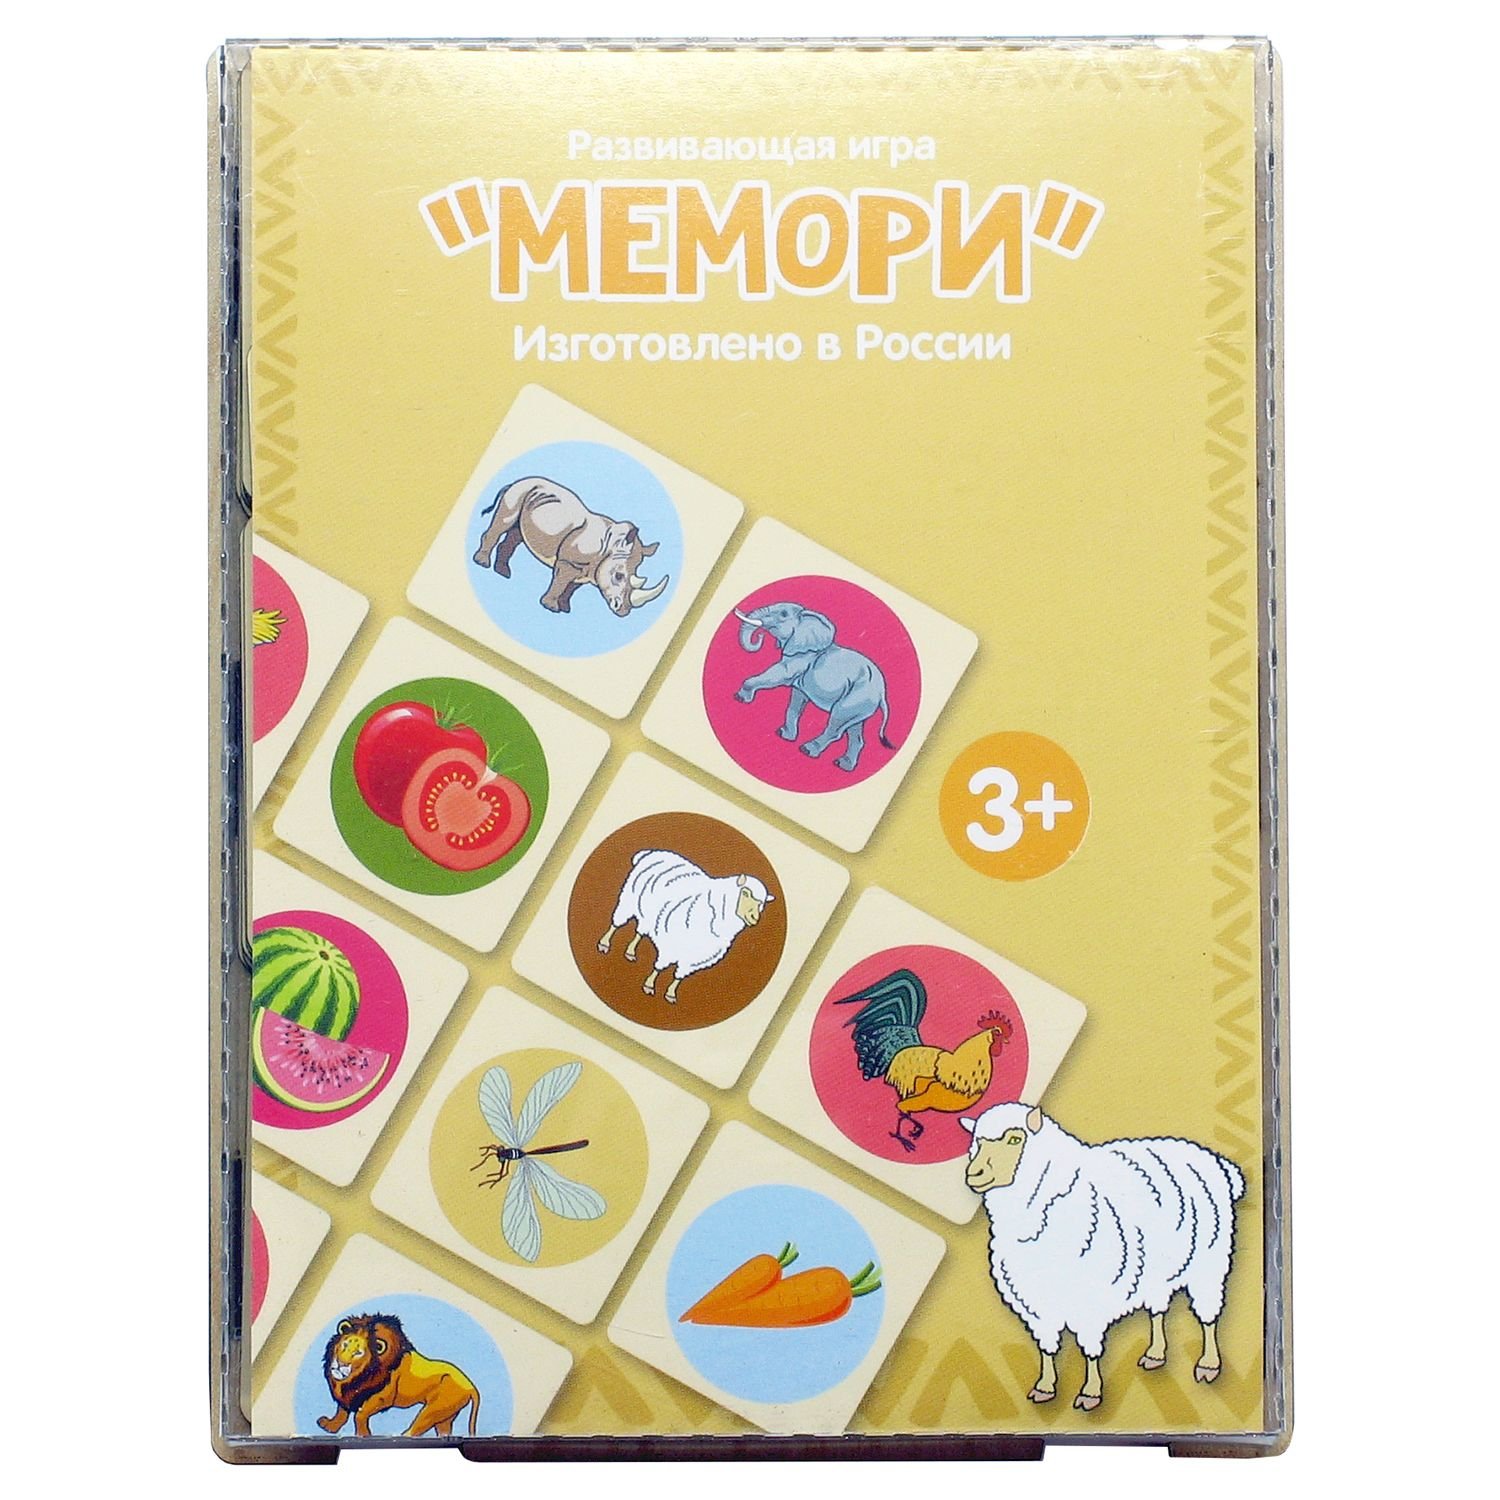 Оф мемори. Мемори. Игровой набор Мемори. Развивающий набор "Мемори". Игра Мемори для девочек.